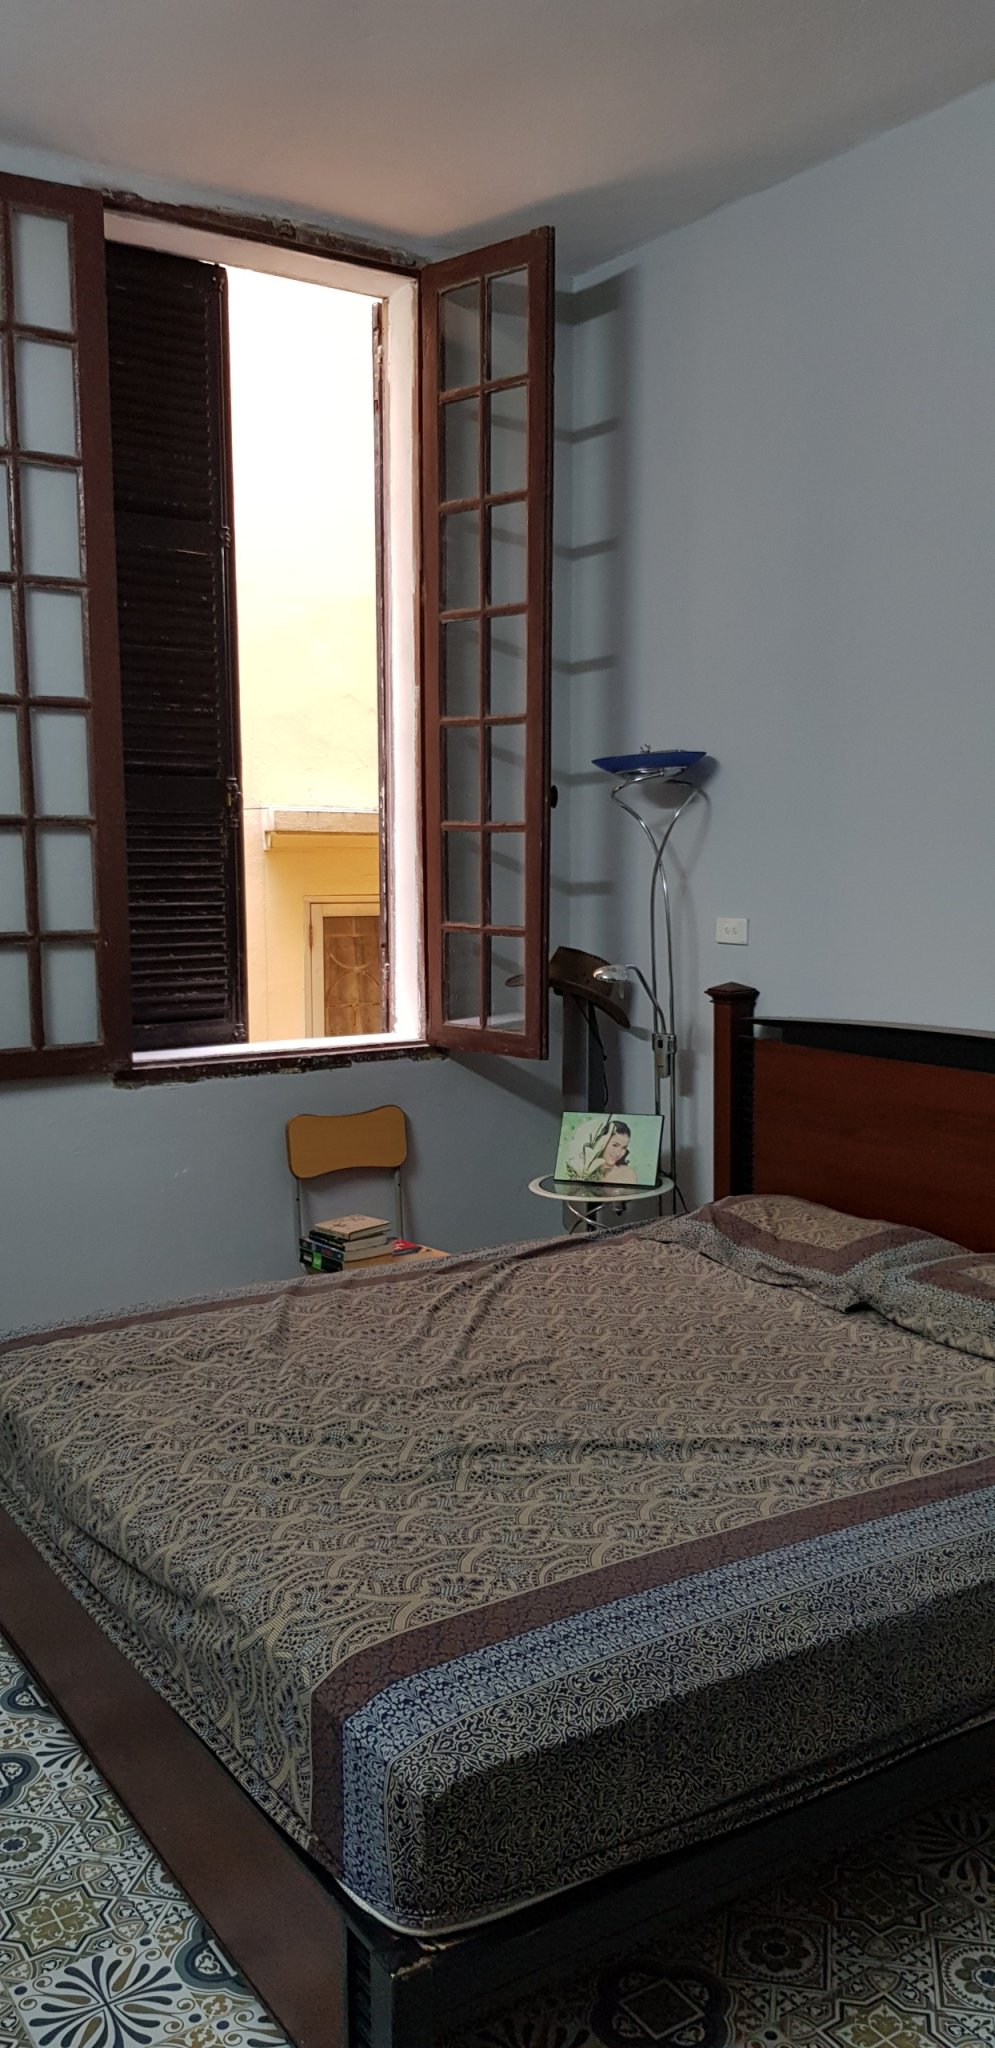 Chính chủ Cho thuê nhà riêng trong ngõ Thông Phong, Tôn Đức 2 phòng ngủ giá 6.5tr/tháng LH 0989306666